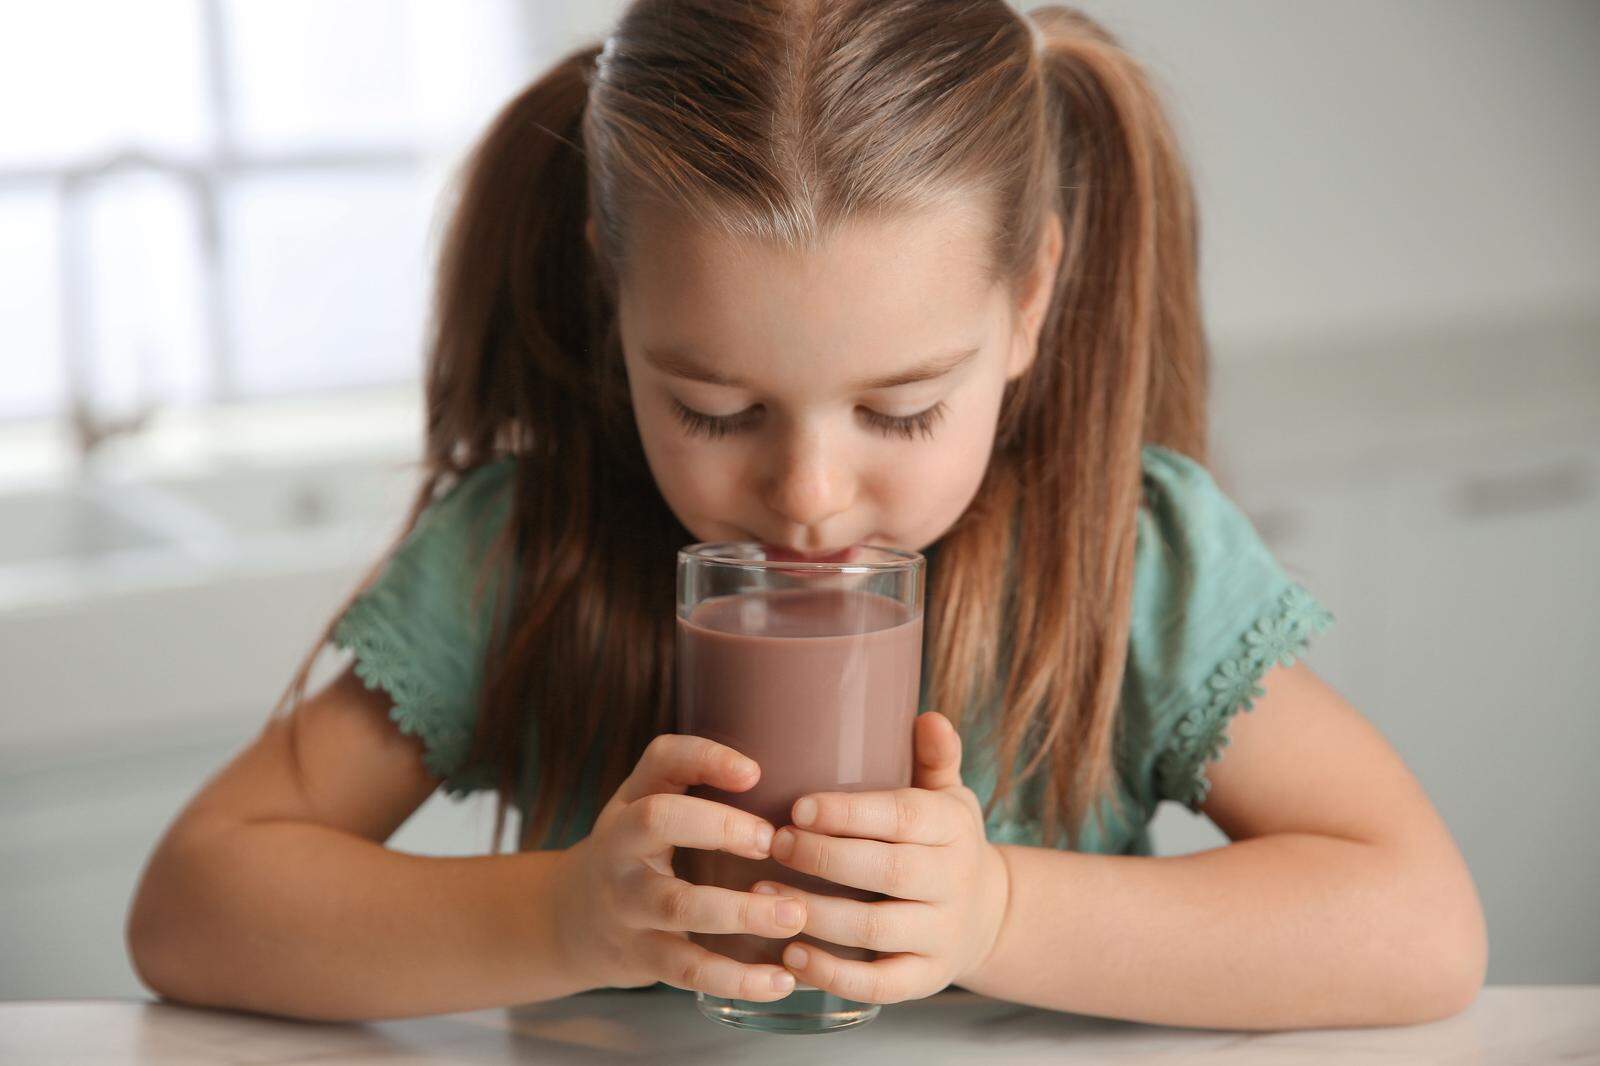 Speziell bei Kinderlebensmitteln sollten Eltern genau auf die Angaben zum Zuckergehalt achten